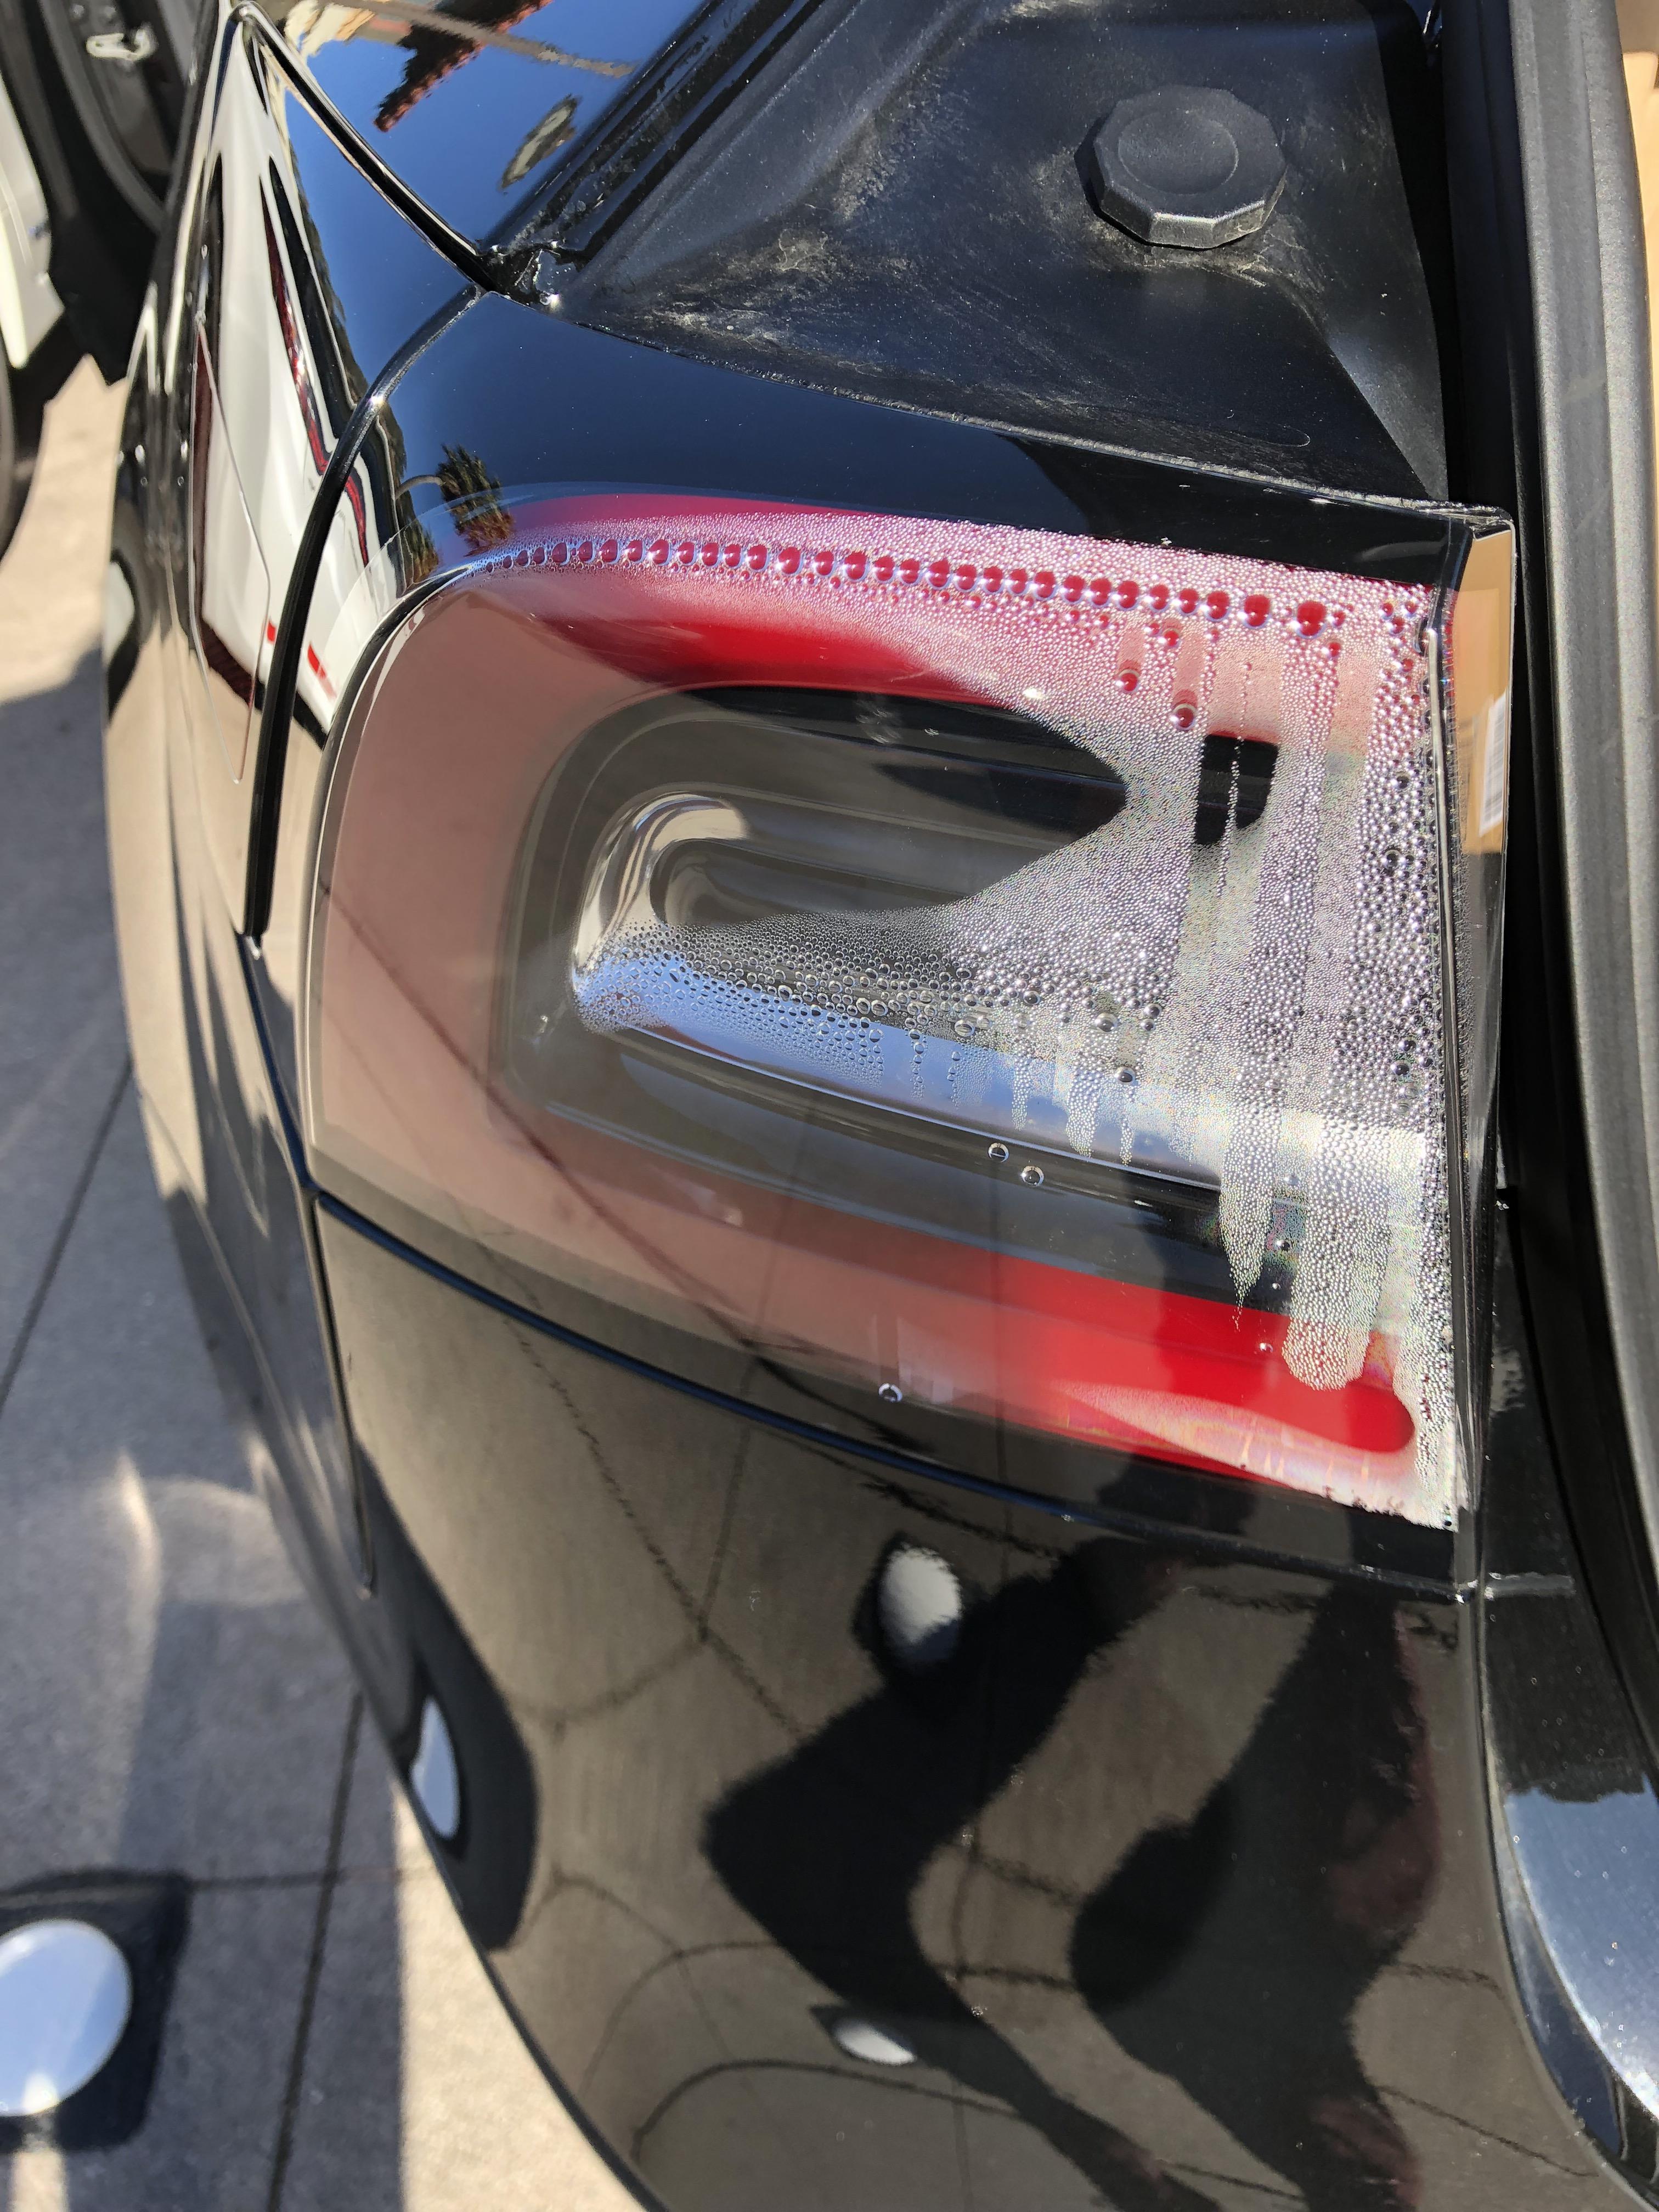 Ďalší dôkaz nekvality Tesly: voda vo svetle nového auta! Zákazníci rušia objednávky...